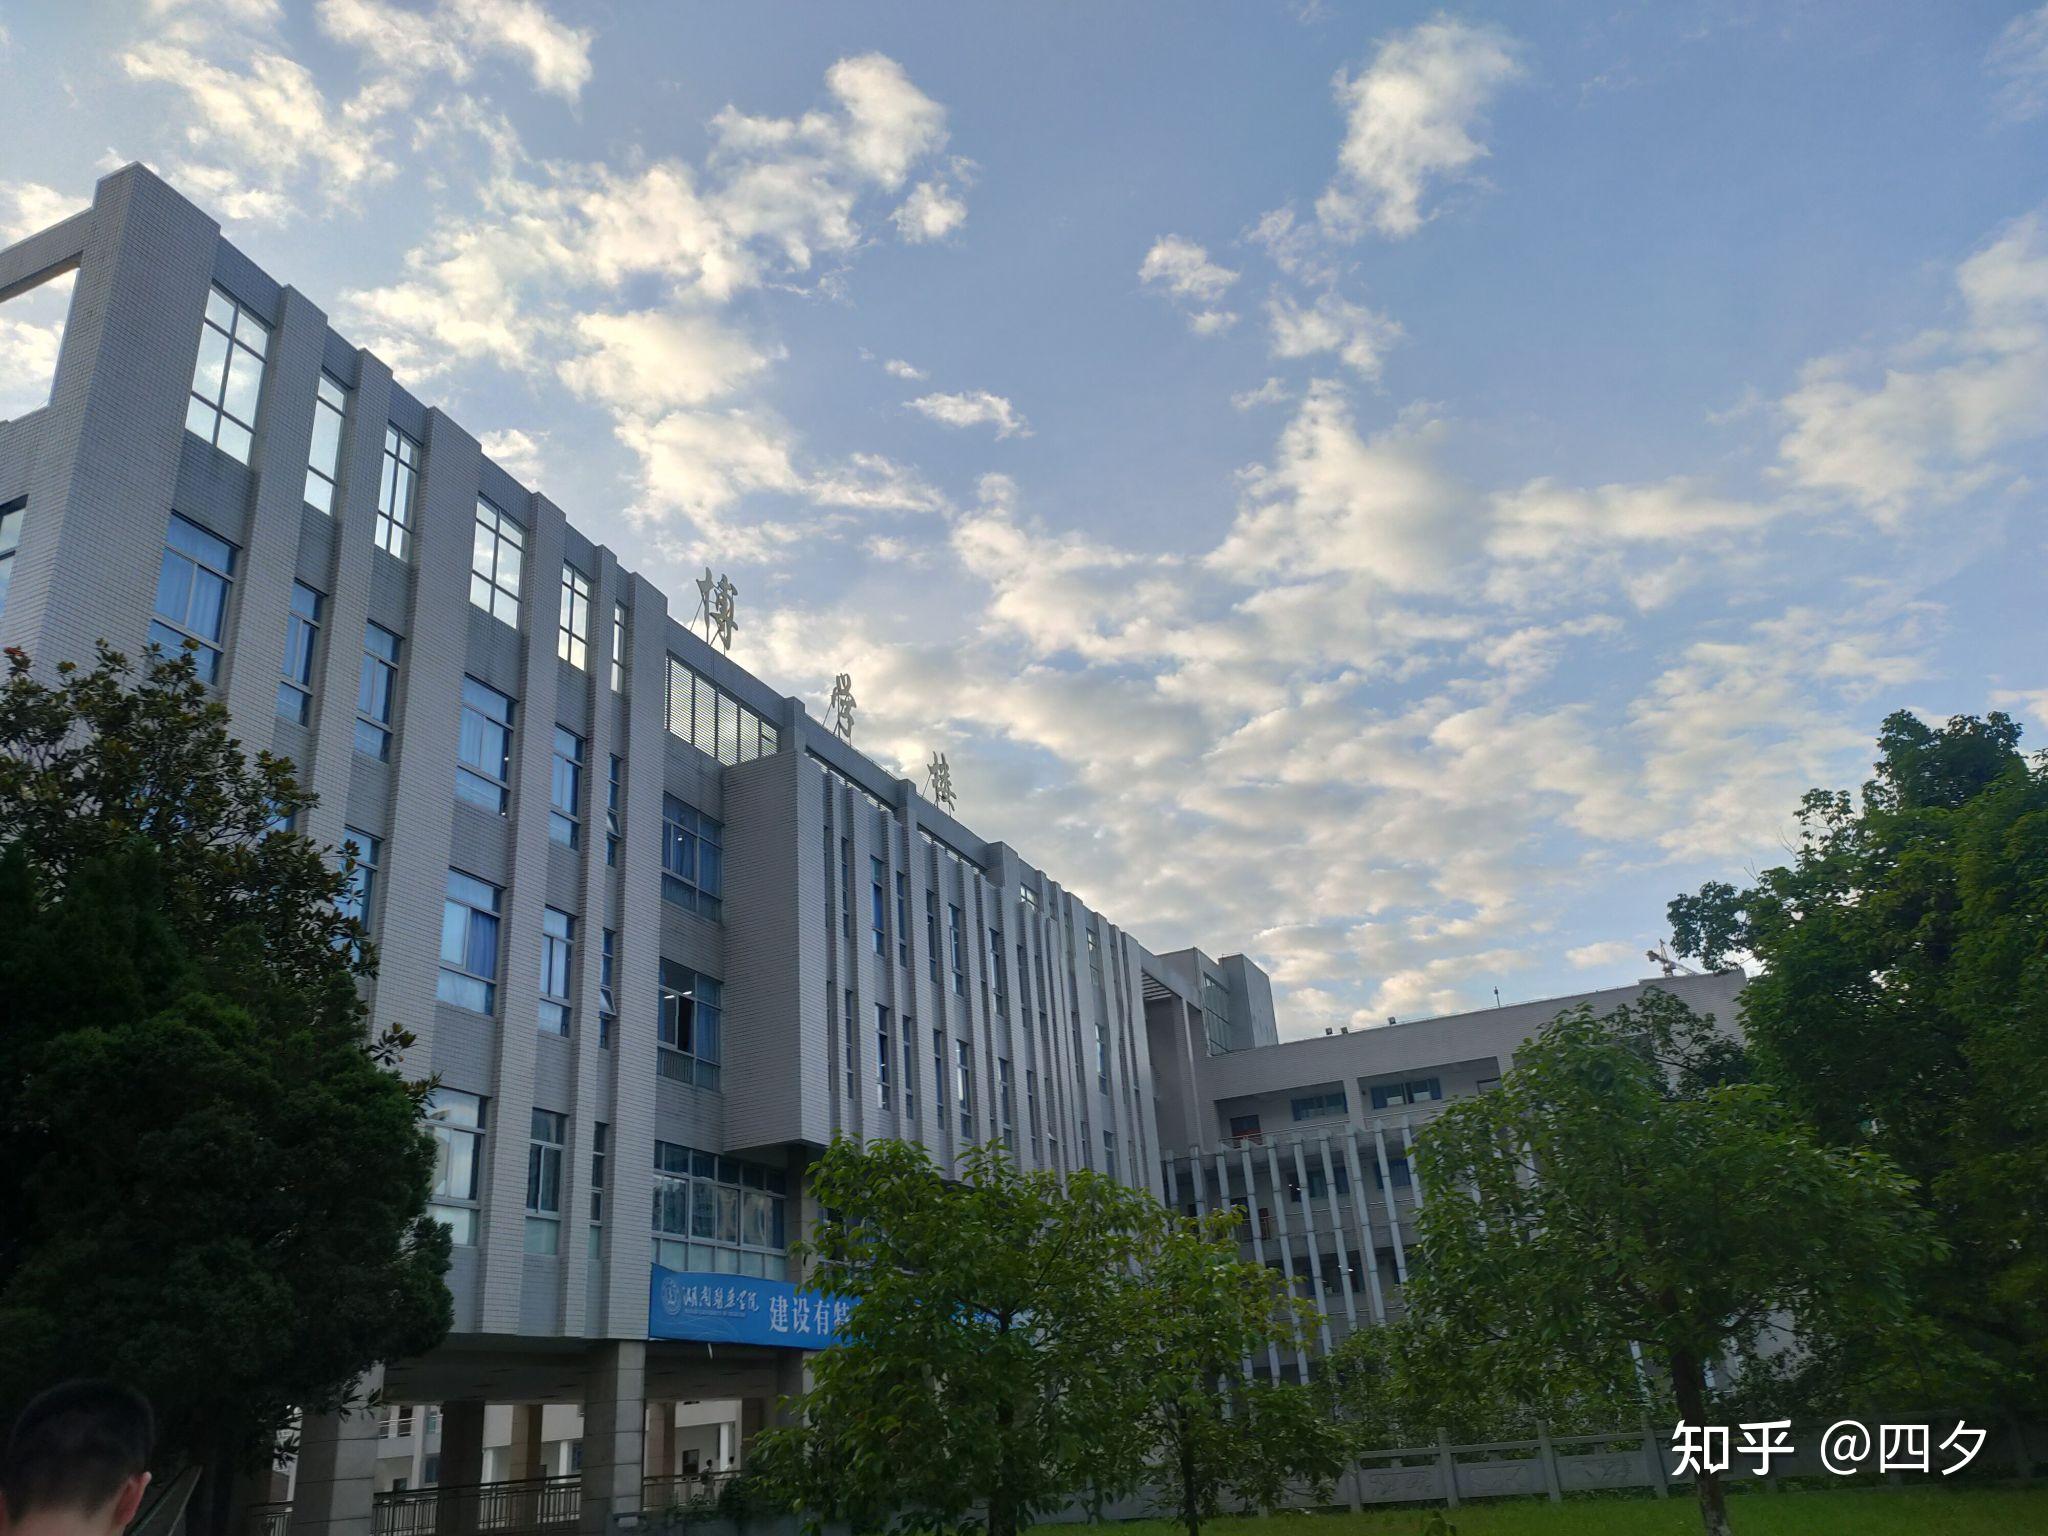 湖南医药学院的宿舍条件如何?校区内有哪些生活设施? 